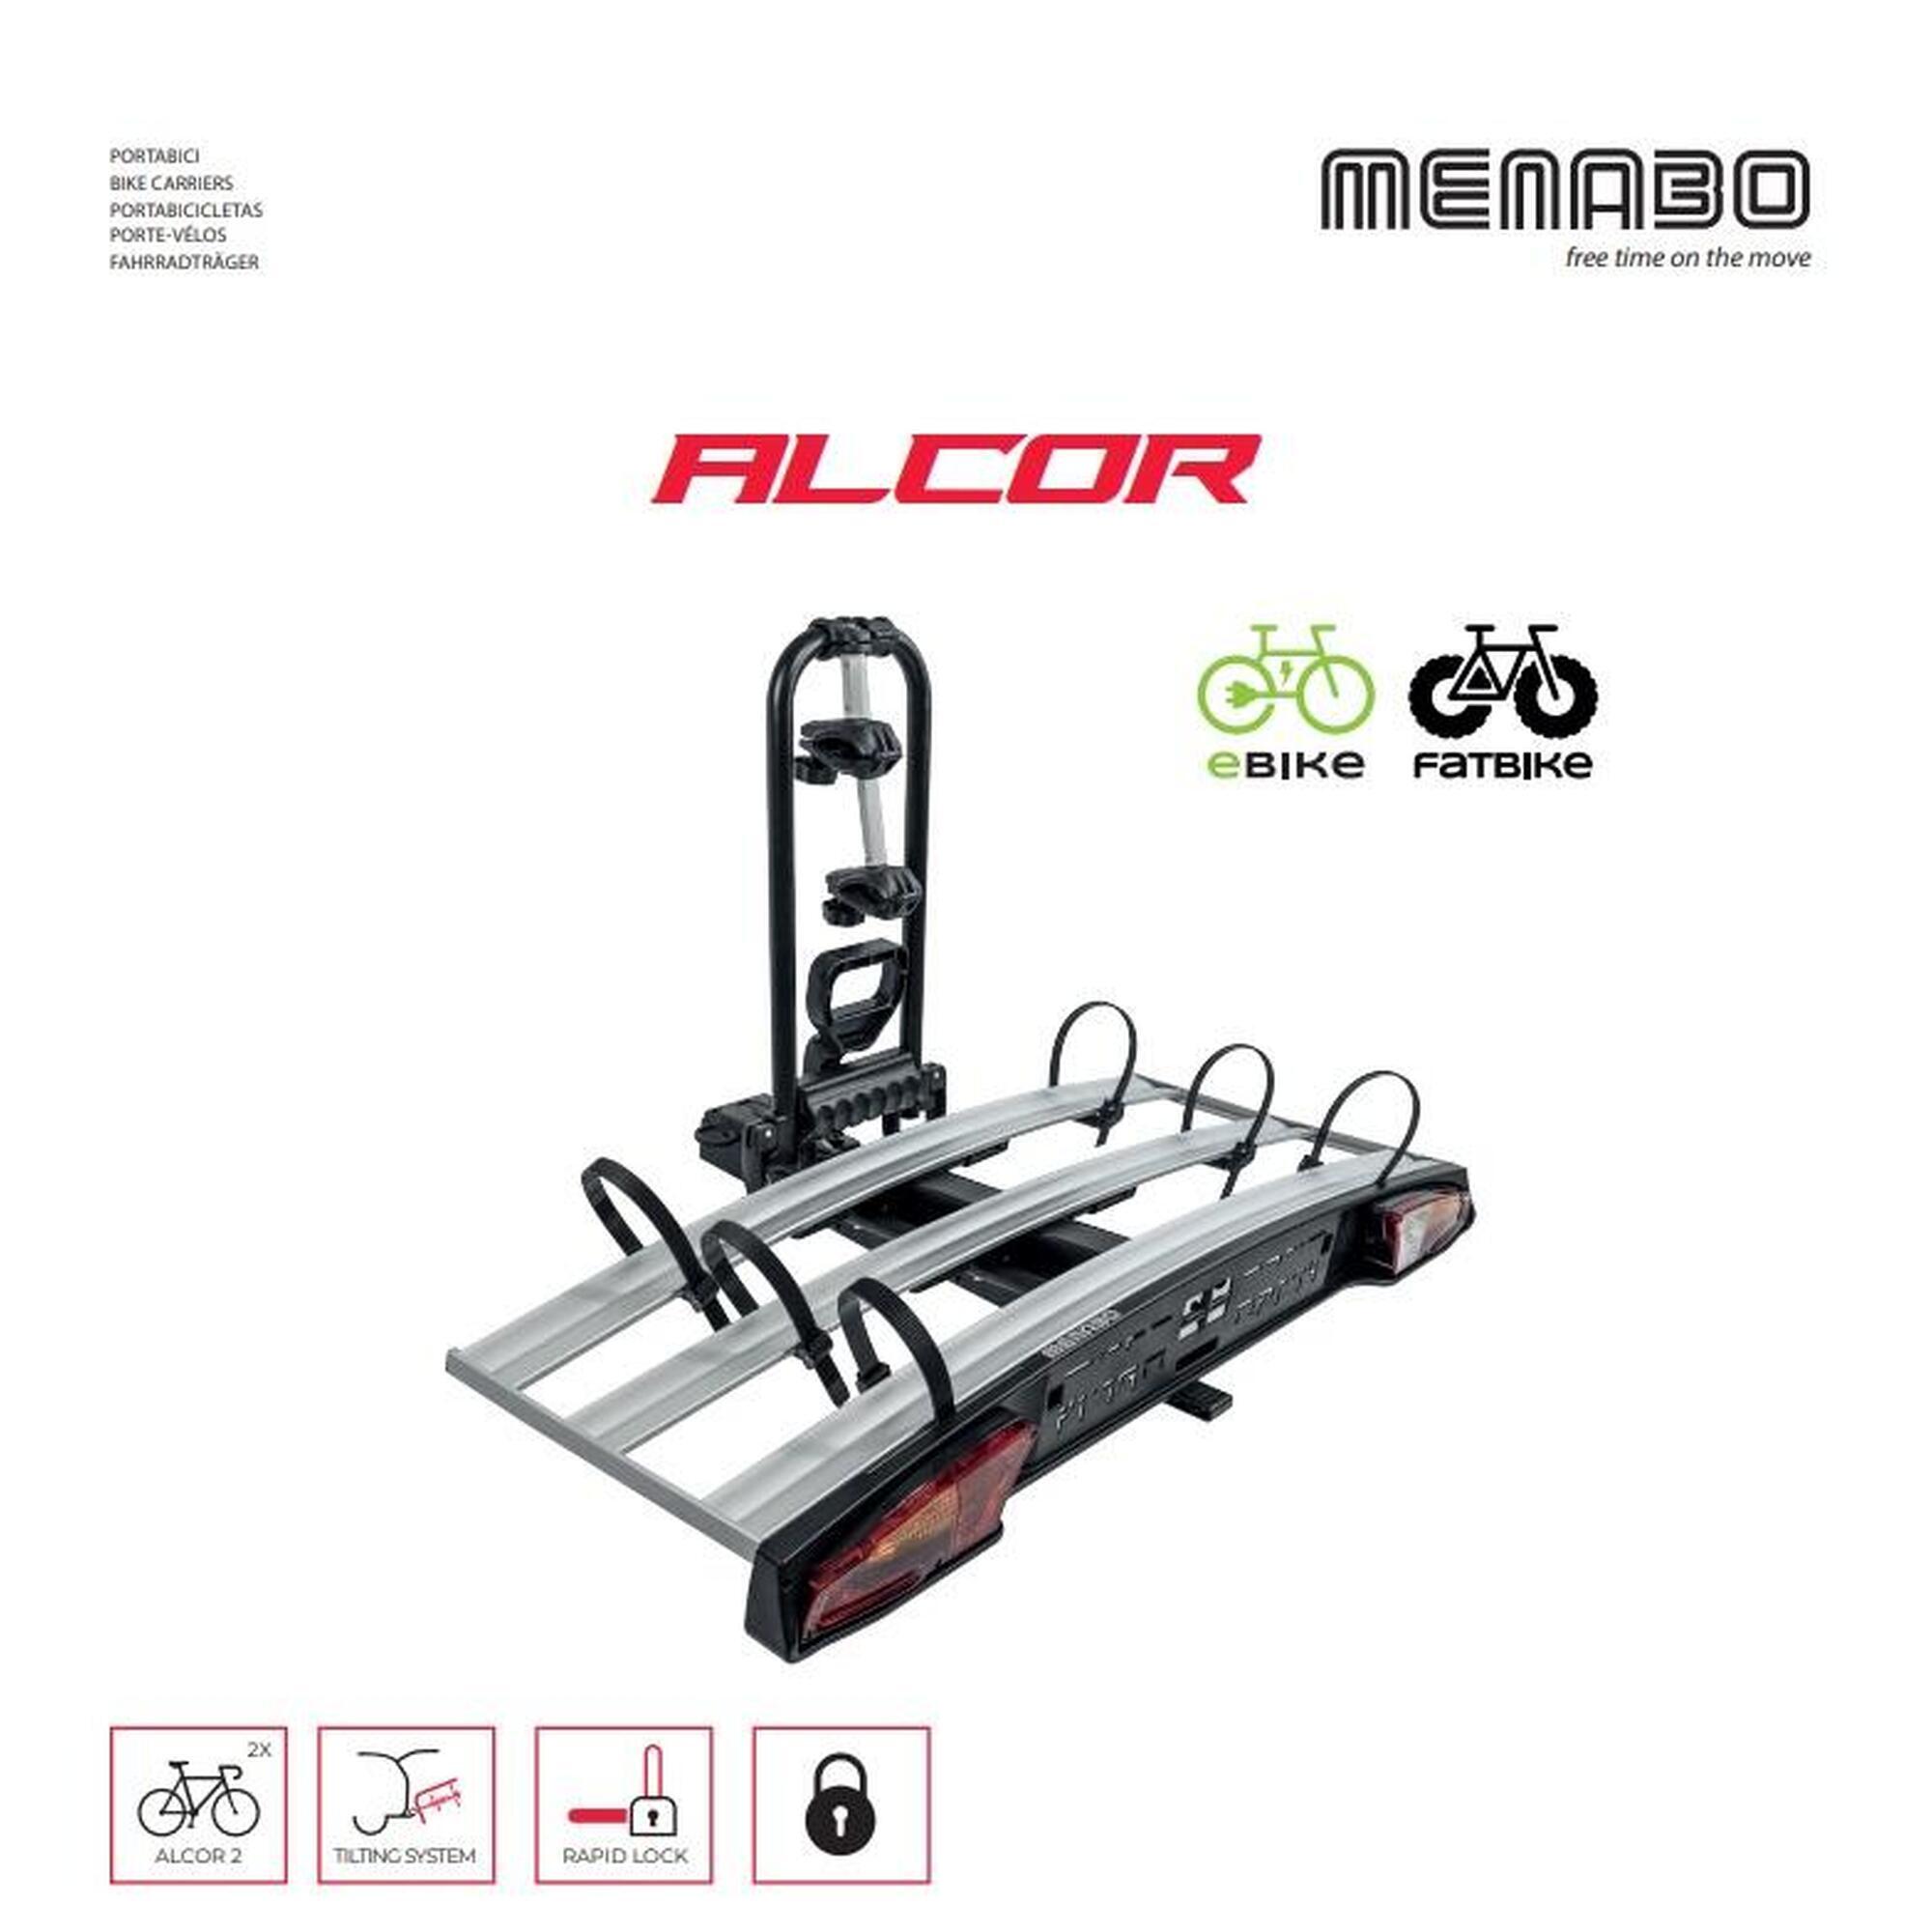 Porta Bici per Gancio Traino auto ALCOR 2 per 2 Bici, Fat Bike o E-Bike